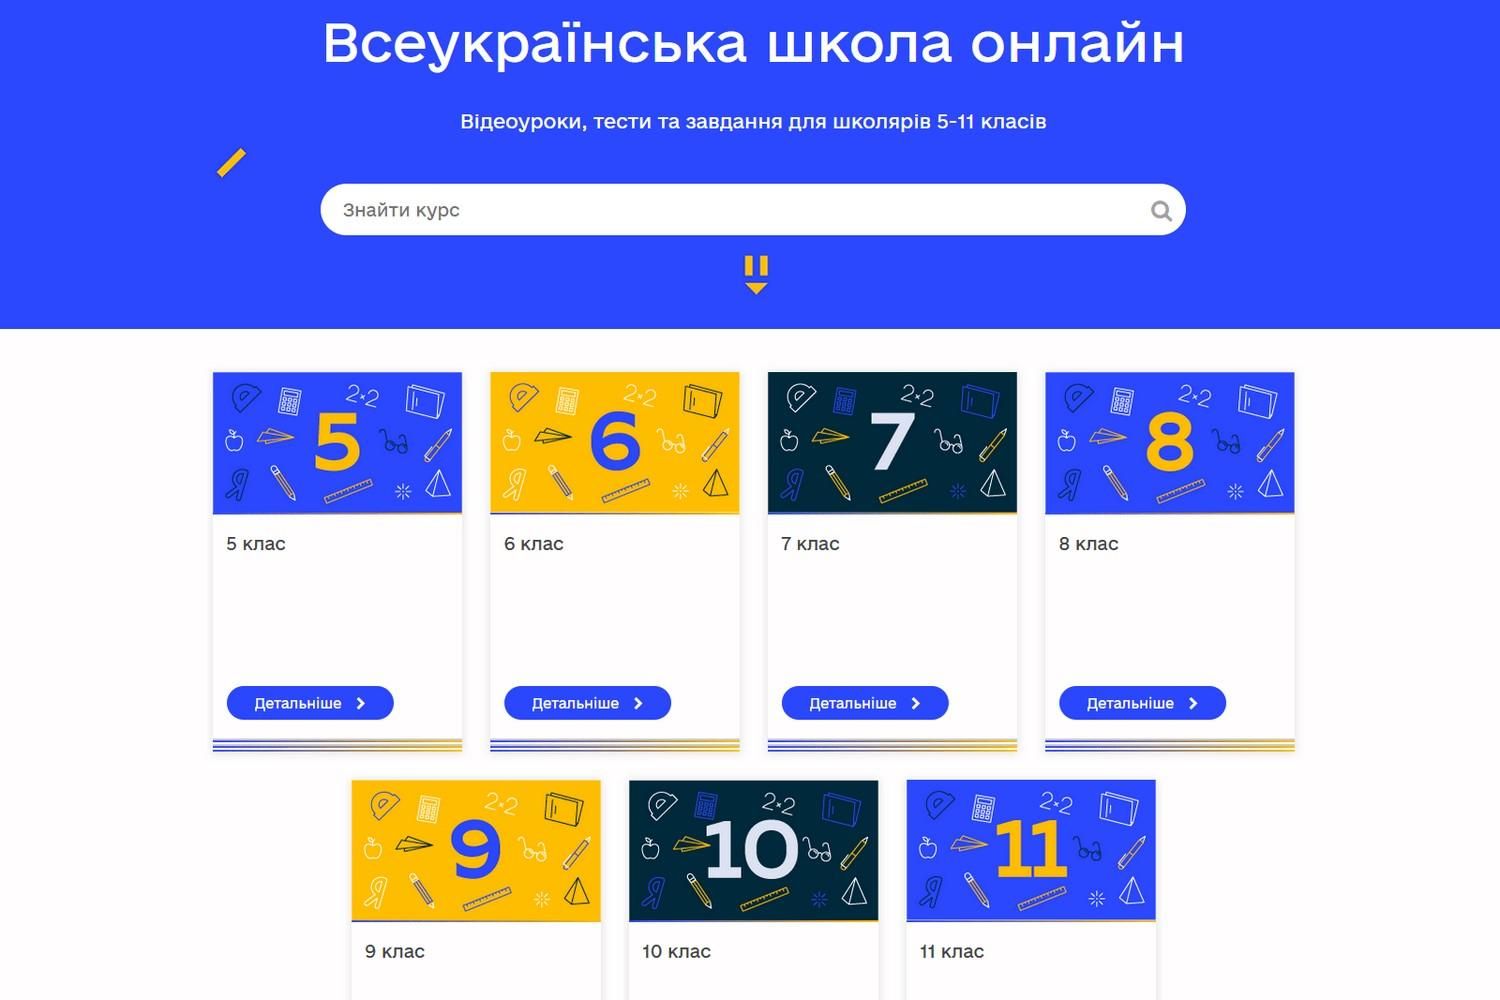 Всеукраинская школа онлайн – это не полноценная платформа для обучения